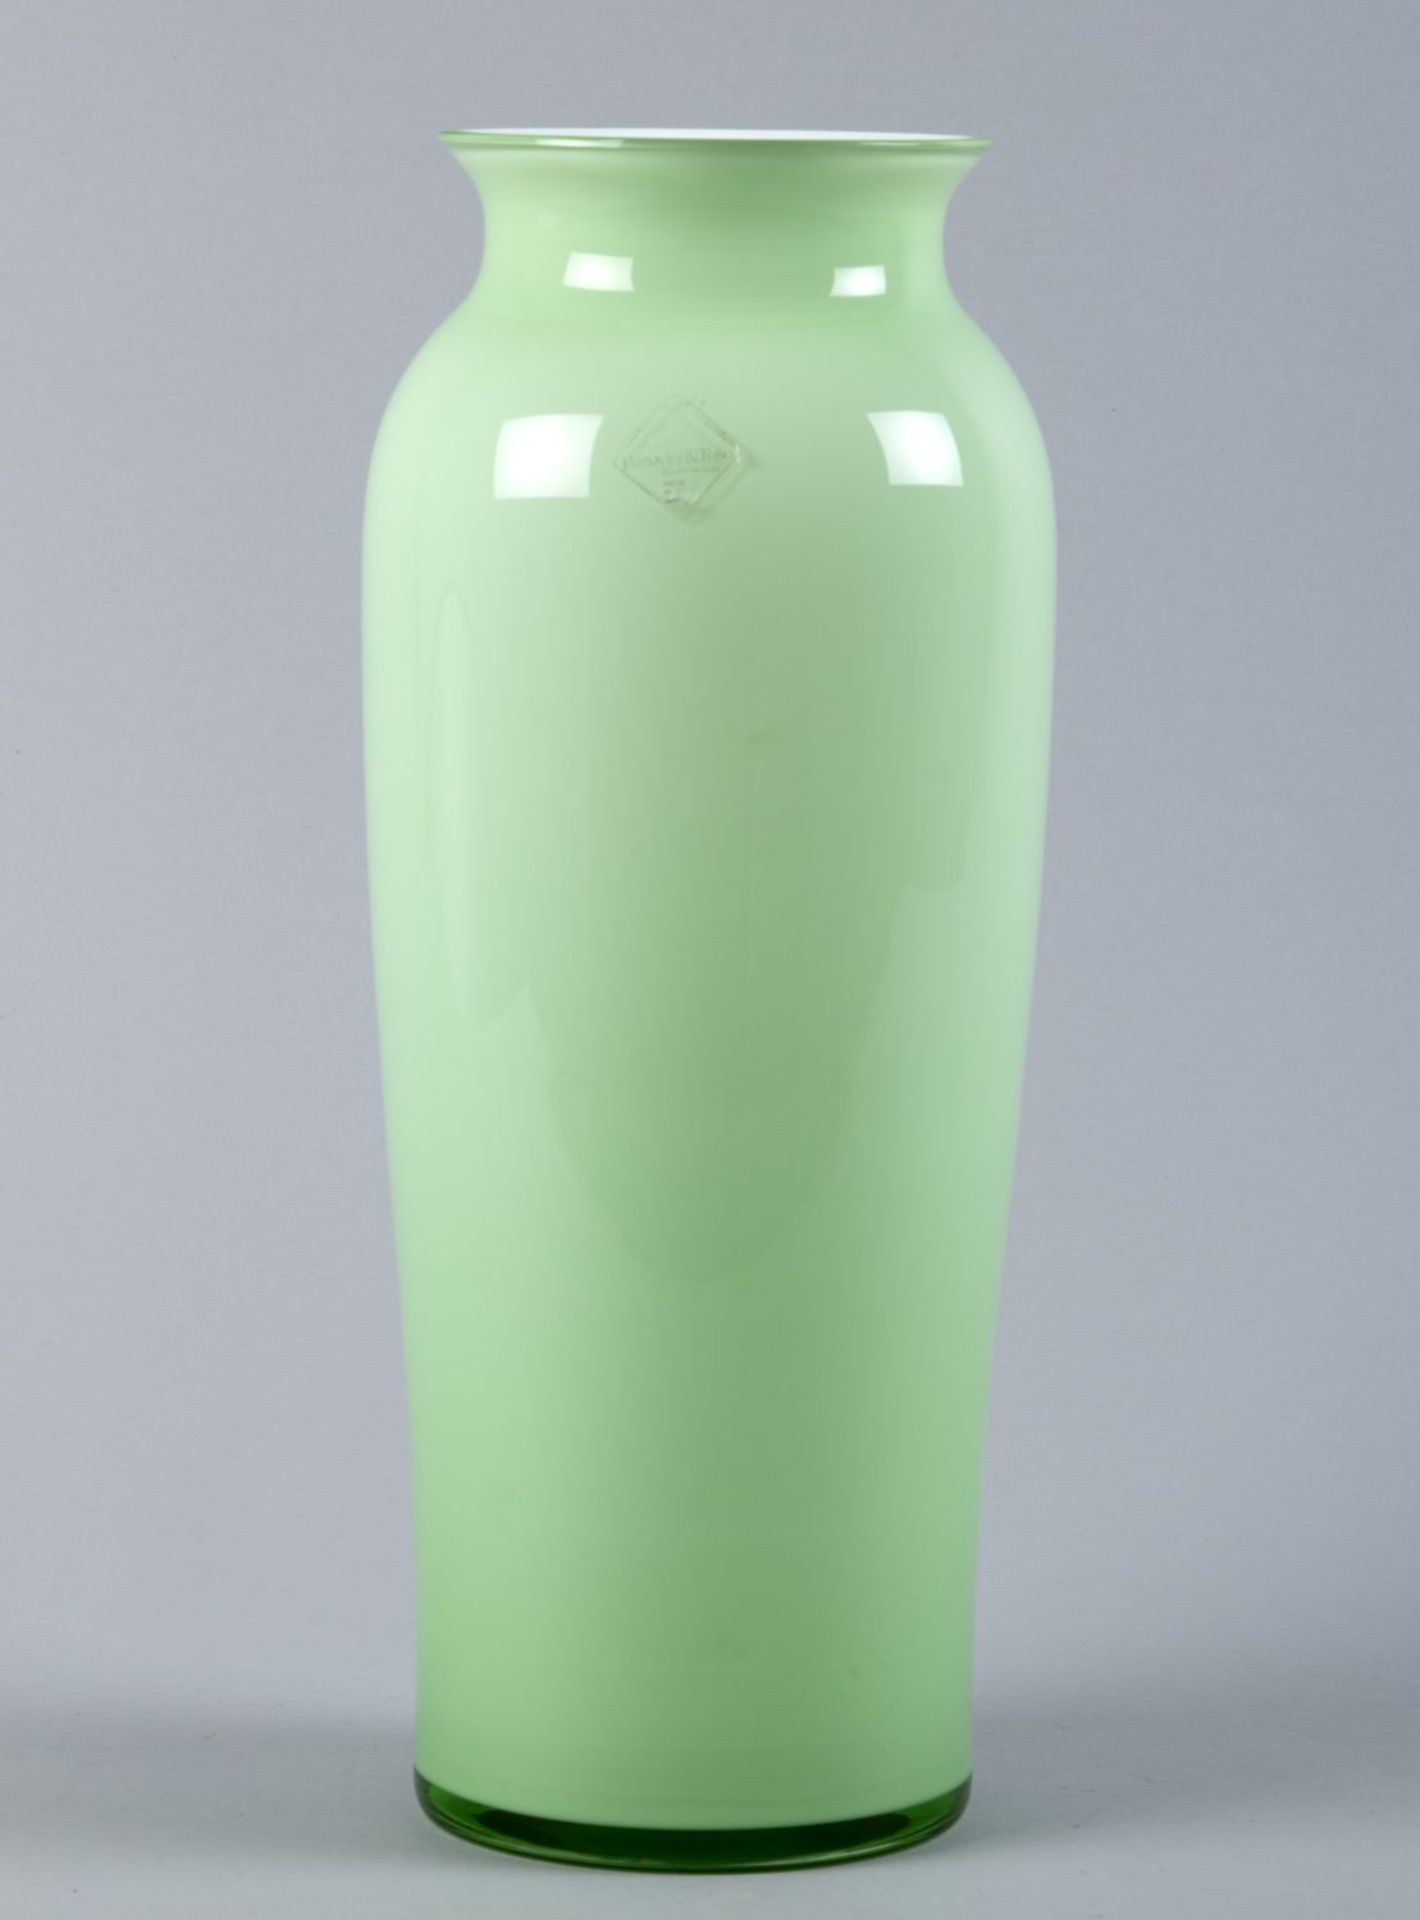 Murano-VaseFarbloses Glas, hellgrün und weiß opak unterfangen. Im Boden bez. Barovier e Toso